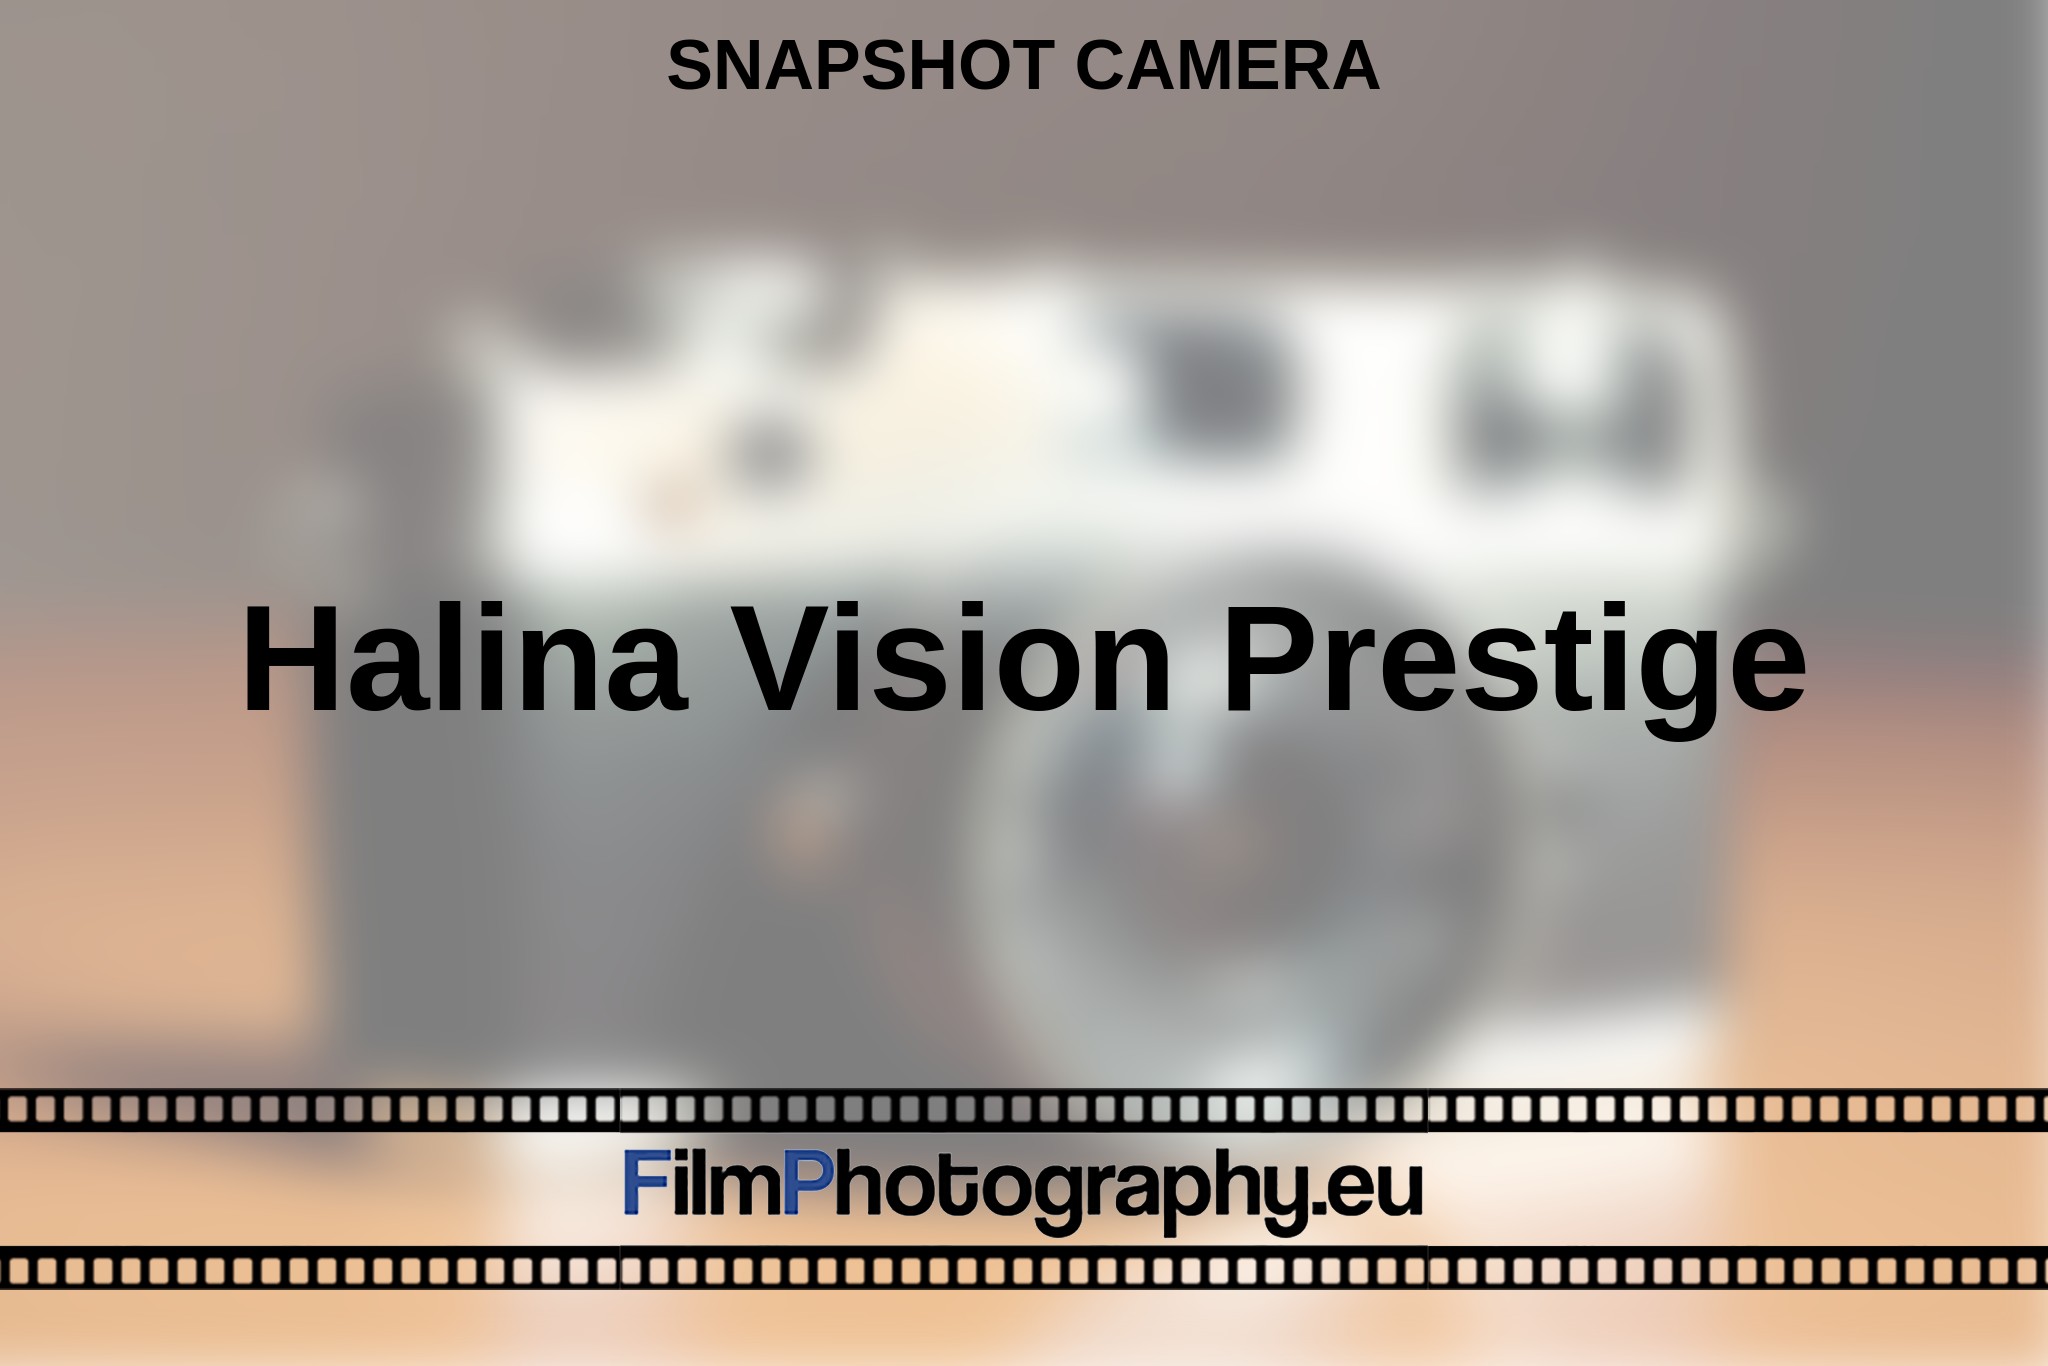 halina-vision-prestige-snapshot-camera-en-bnv.jpg